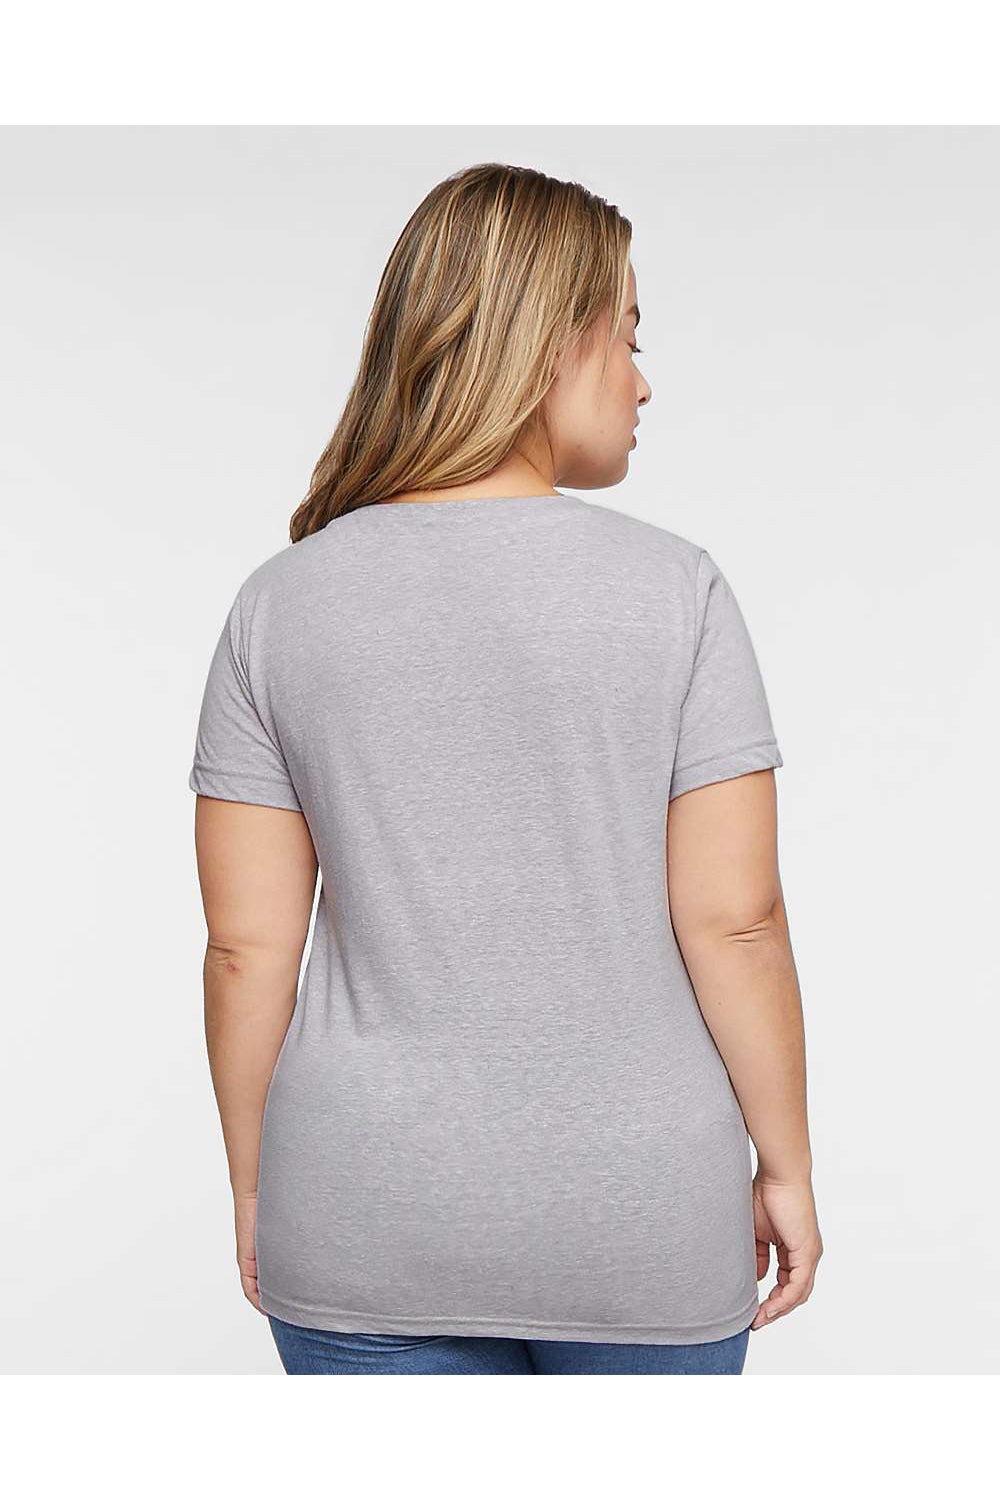 LAT 3591 Womens Harborside Melange Short Sleeve V-Neck T-Shirt Grey Model Back